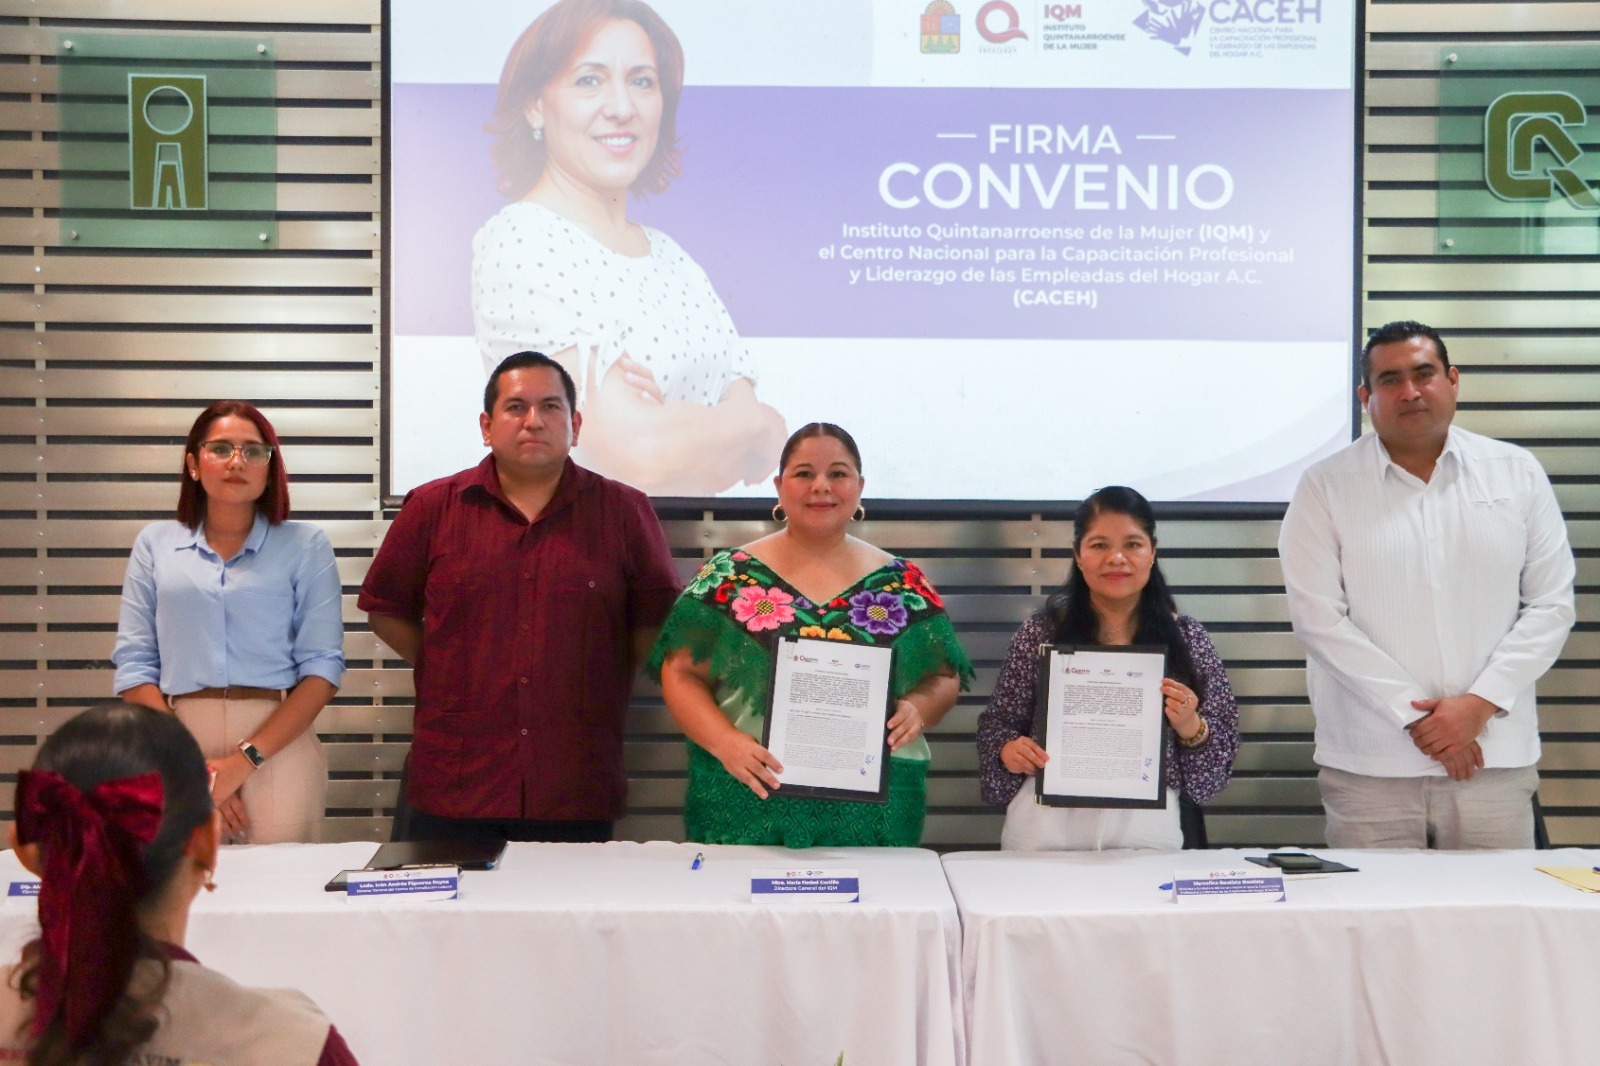 IQM y CACEH firman convenio para proteger los derechos de las trabajadoras del hogar en Quintana Roo